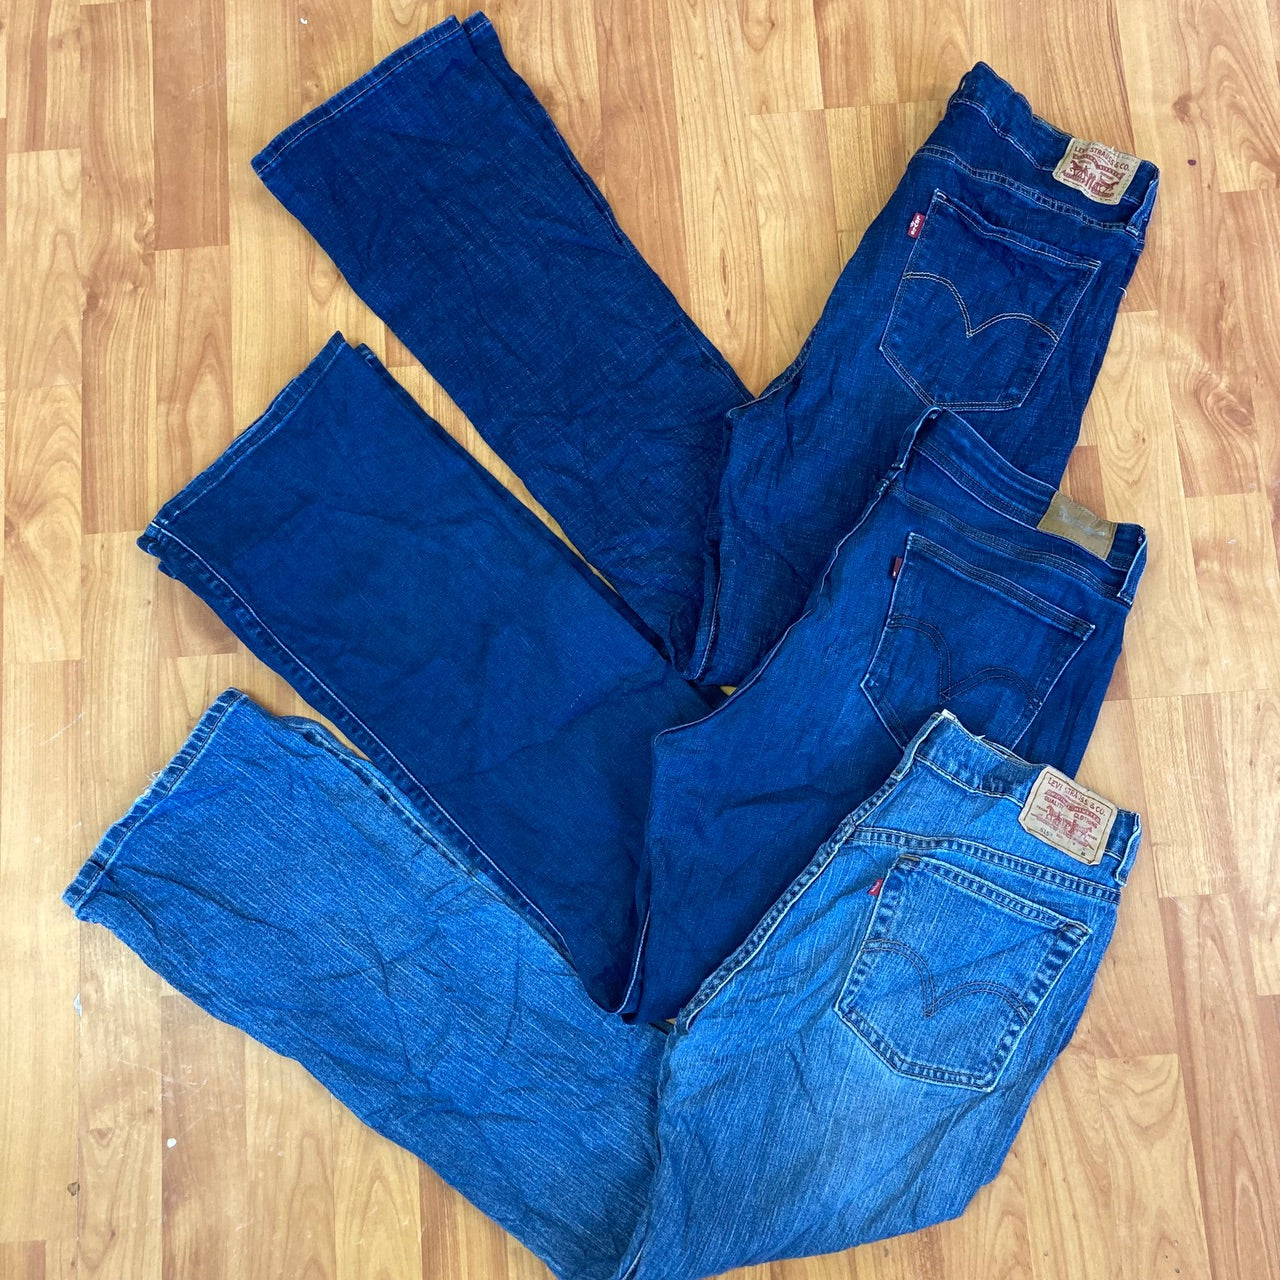 Levi’s Boot Cut Jeans - 20 Pieces